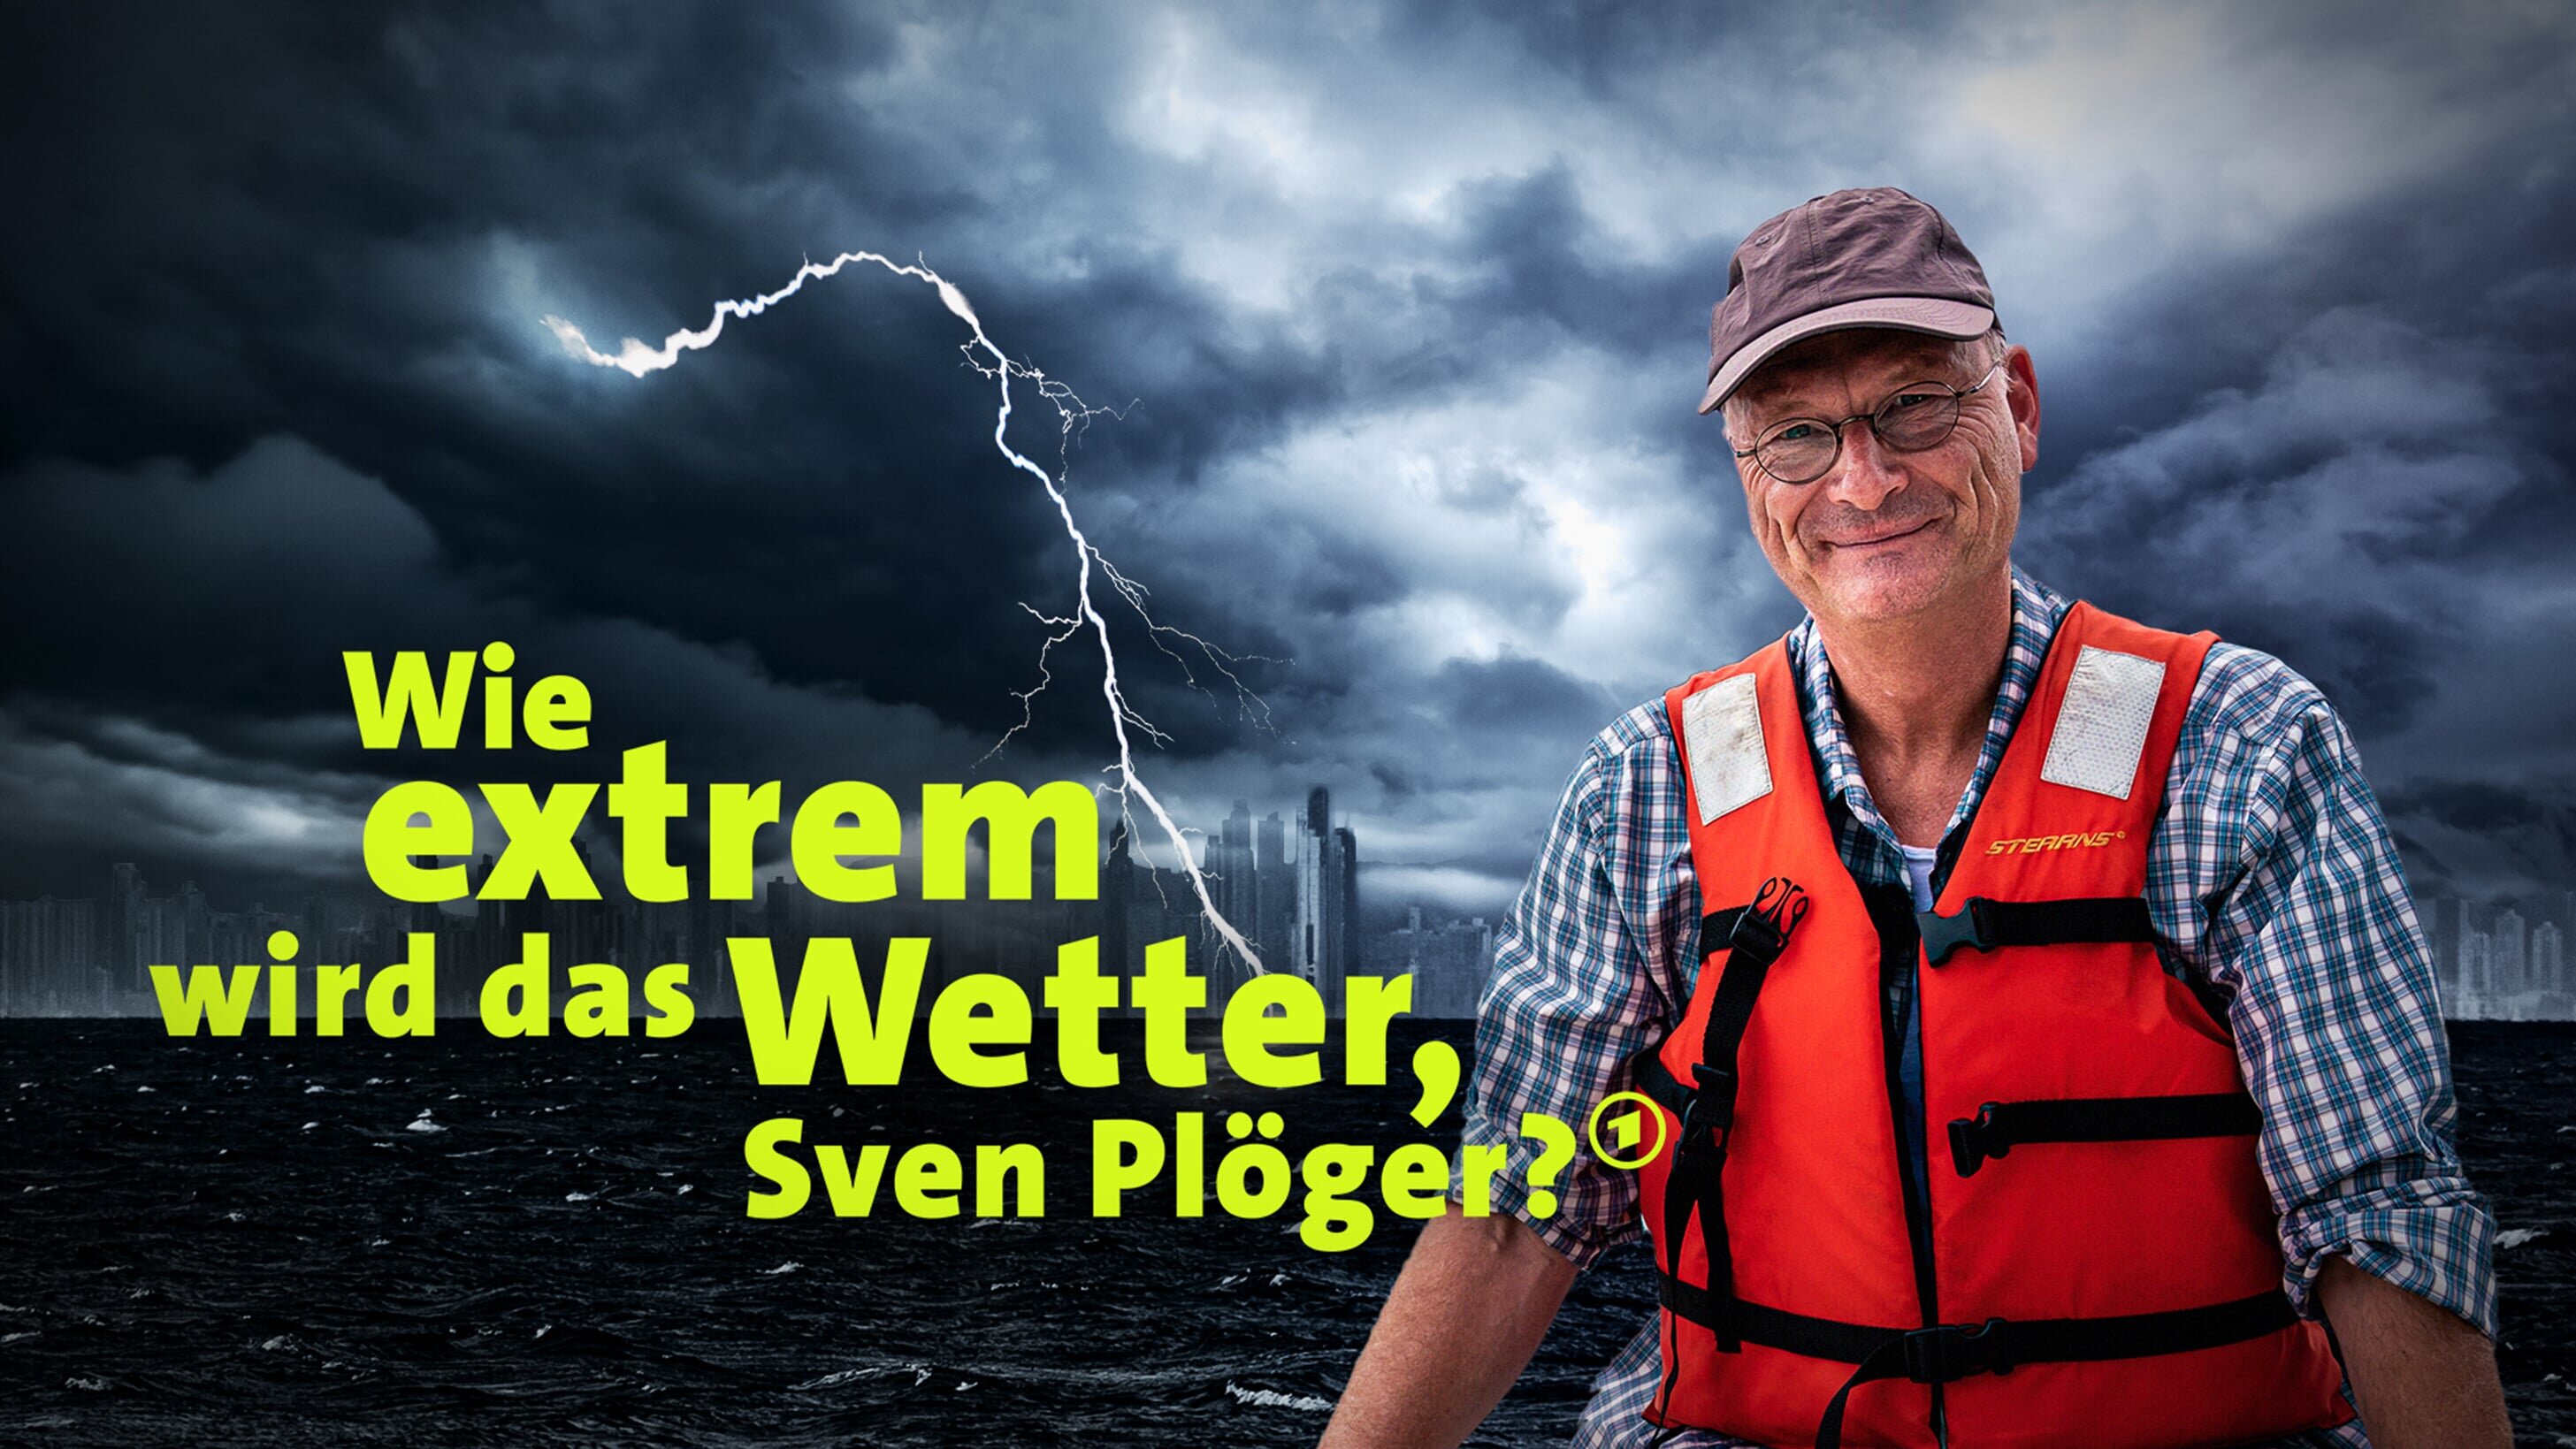 Wie extrem wird das Wetter, Sven Plöger?